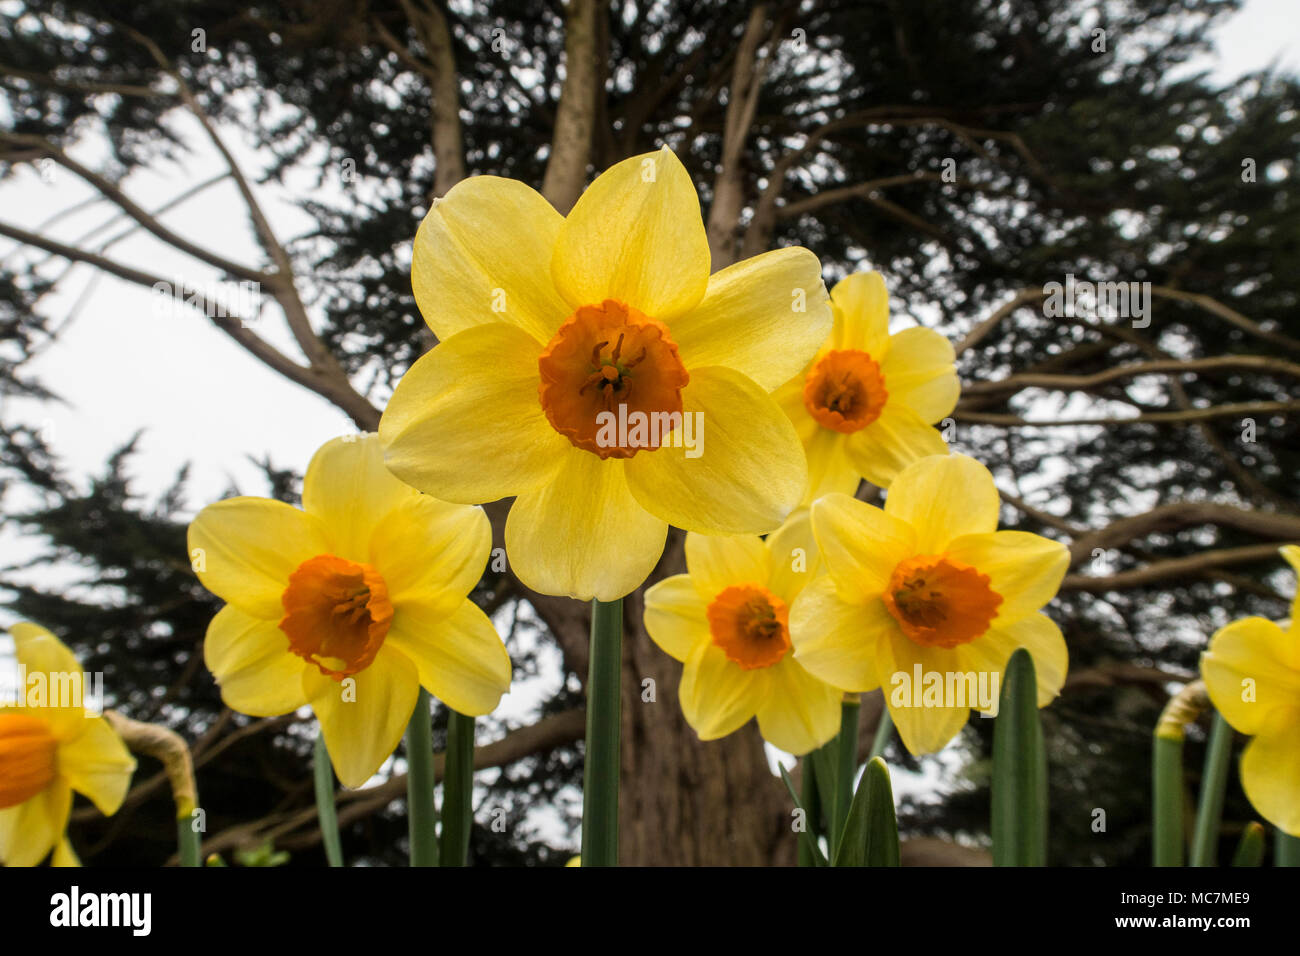 Tromba daffodil Hero, narcisi, giallo con orange center fiori di primavera crescente sotto a Monterey Cipro tree. Foto Stock